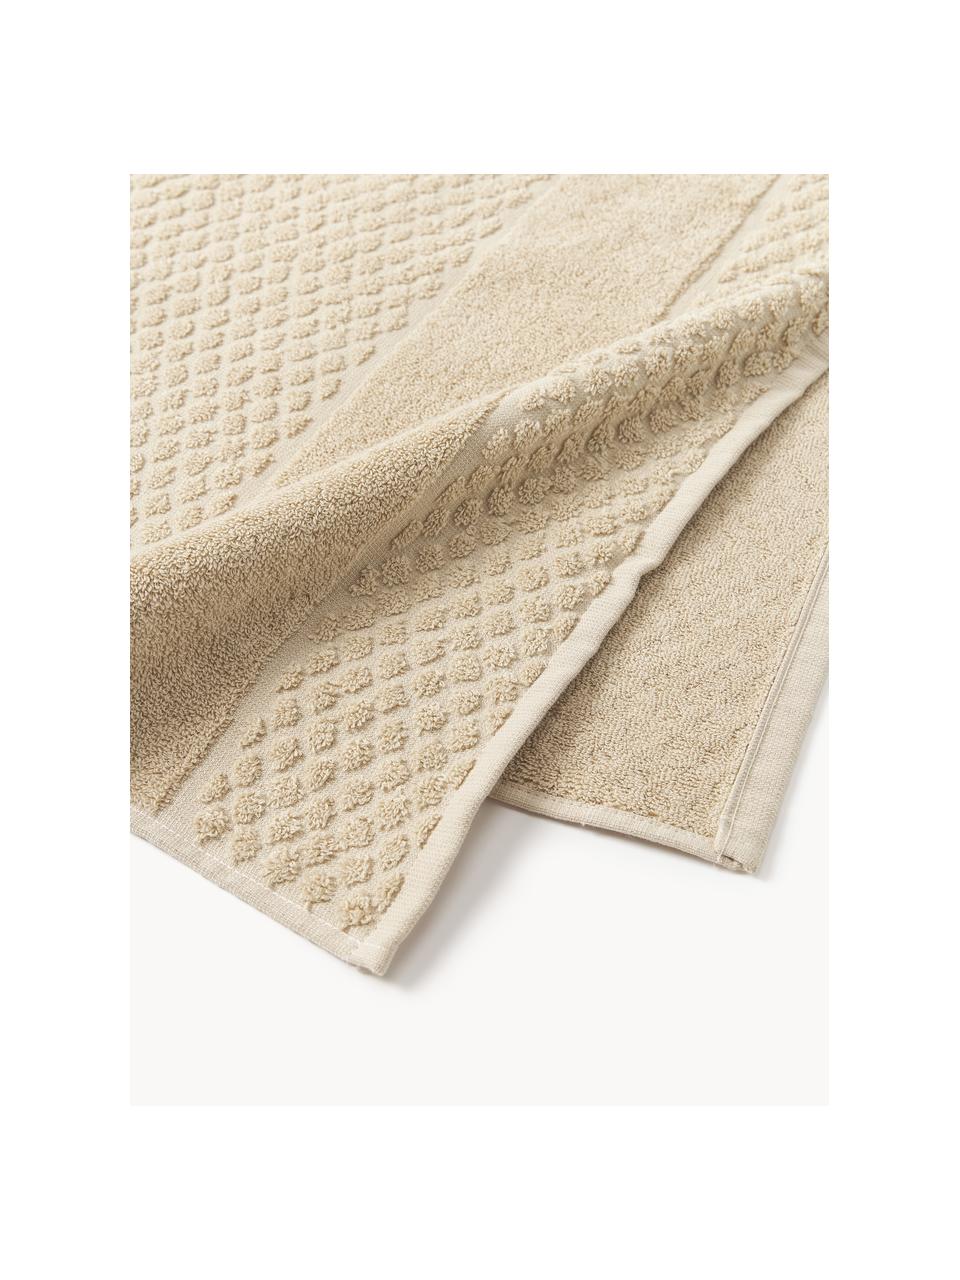 Handdoek Katharina met honingraatpatroon in verschillende formaten, Beige, Handdoek, B 50 x L 100 cm, 2 stuks